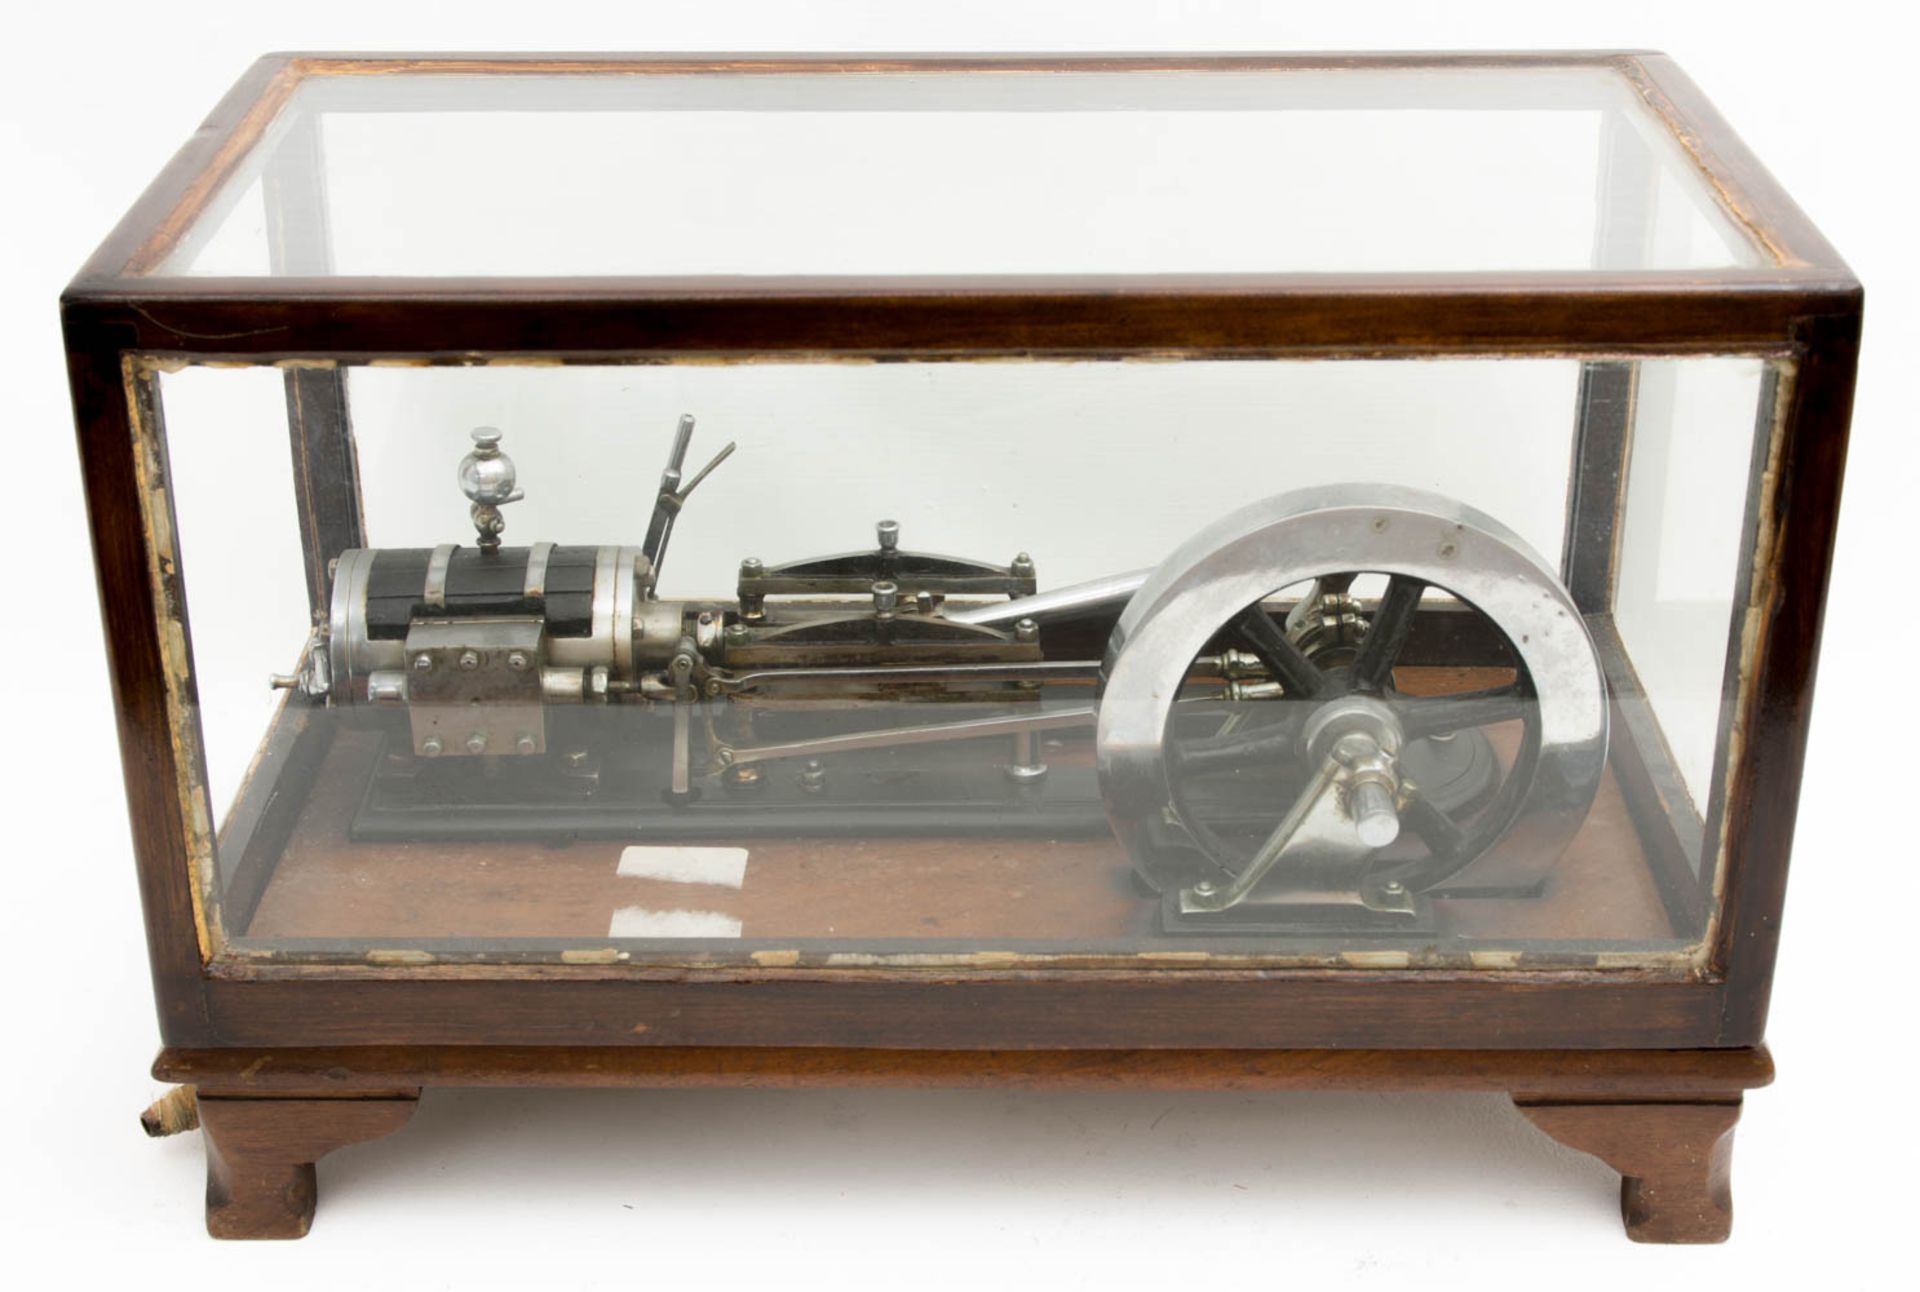 Modell Dampfmaschine in Holzkasten mit Glasscheiben.Kleine Modell-Dampfmaschine in Hol